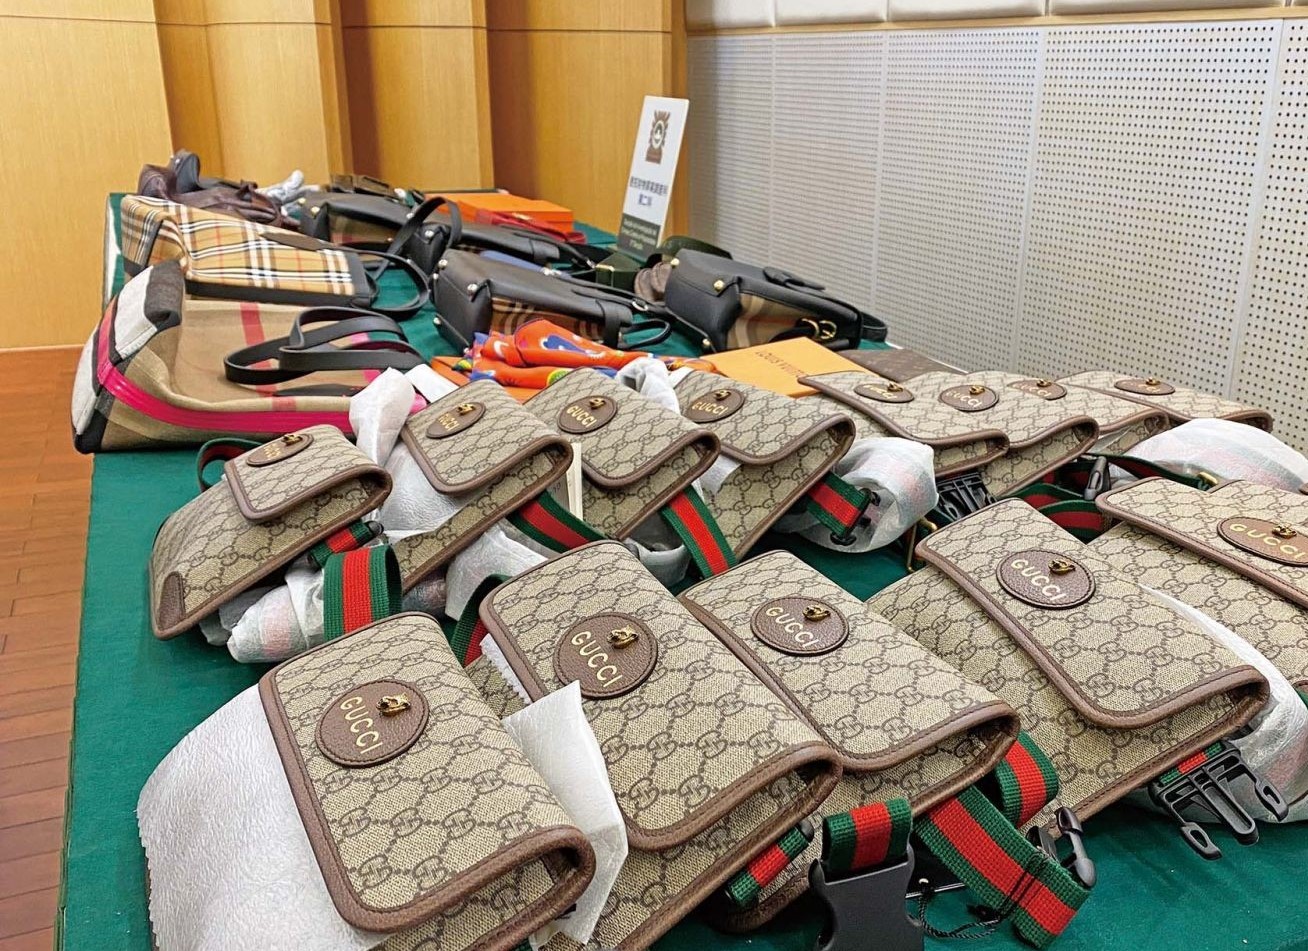 Trio masquerading as deliverymen steal handbags worth HK$800,000